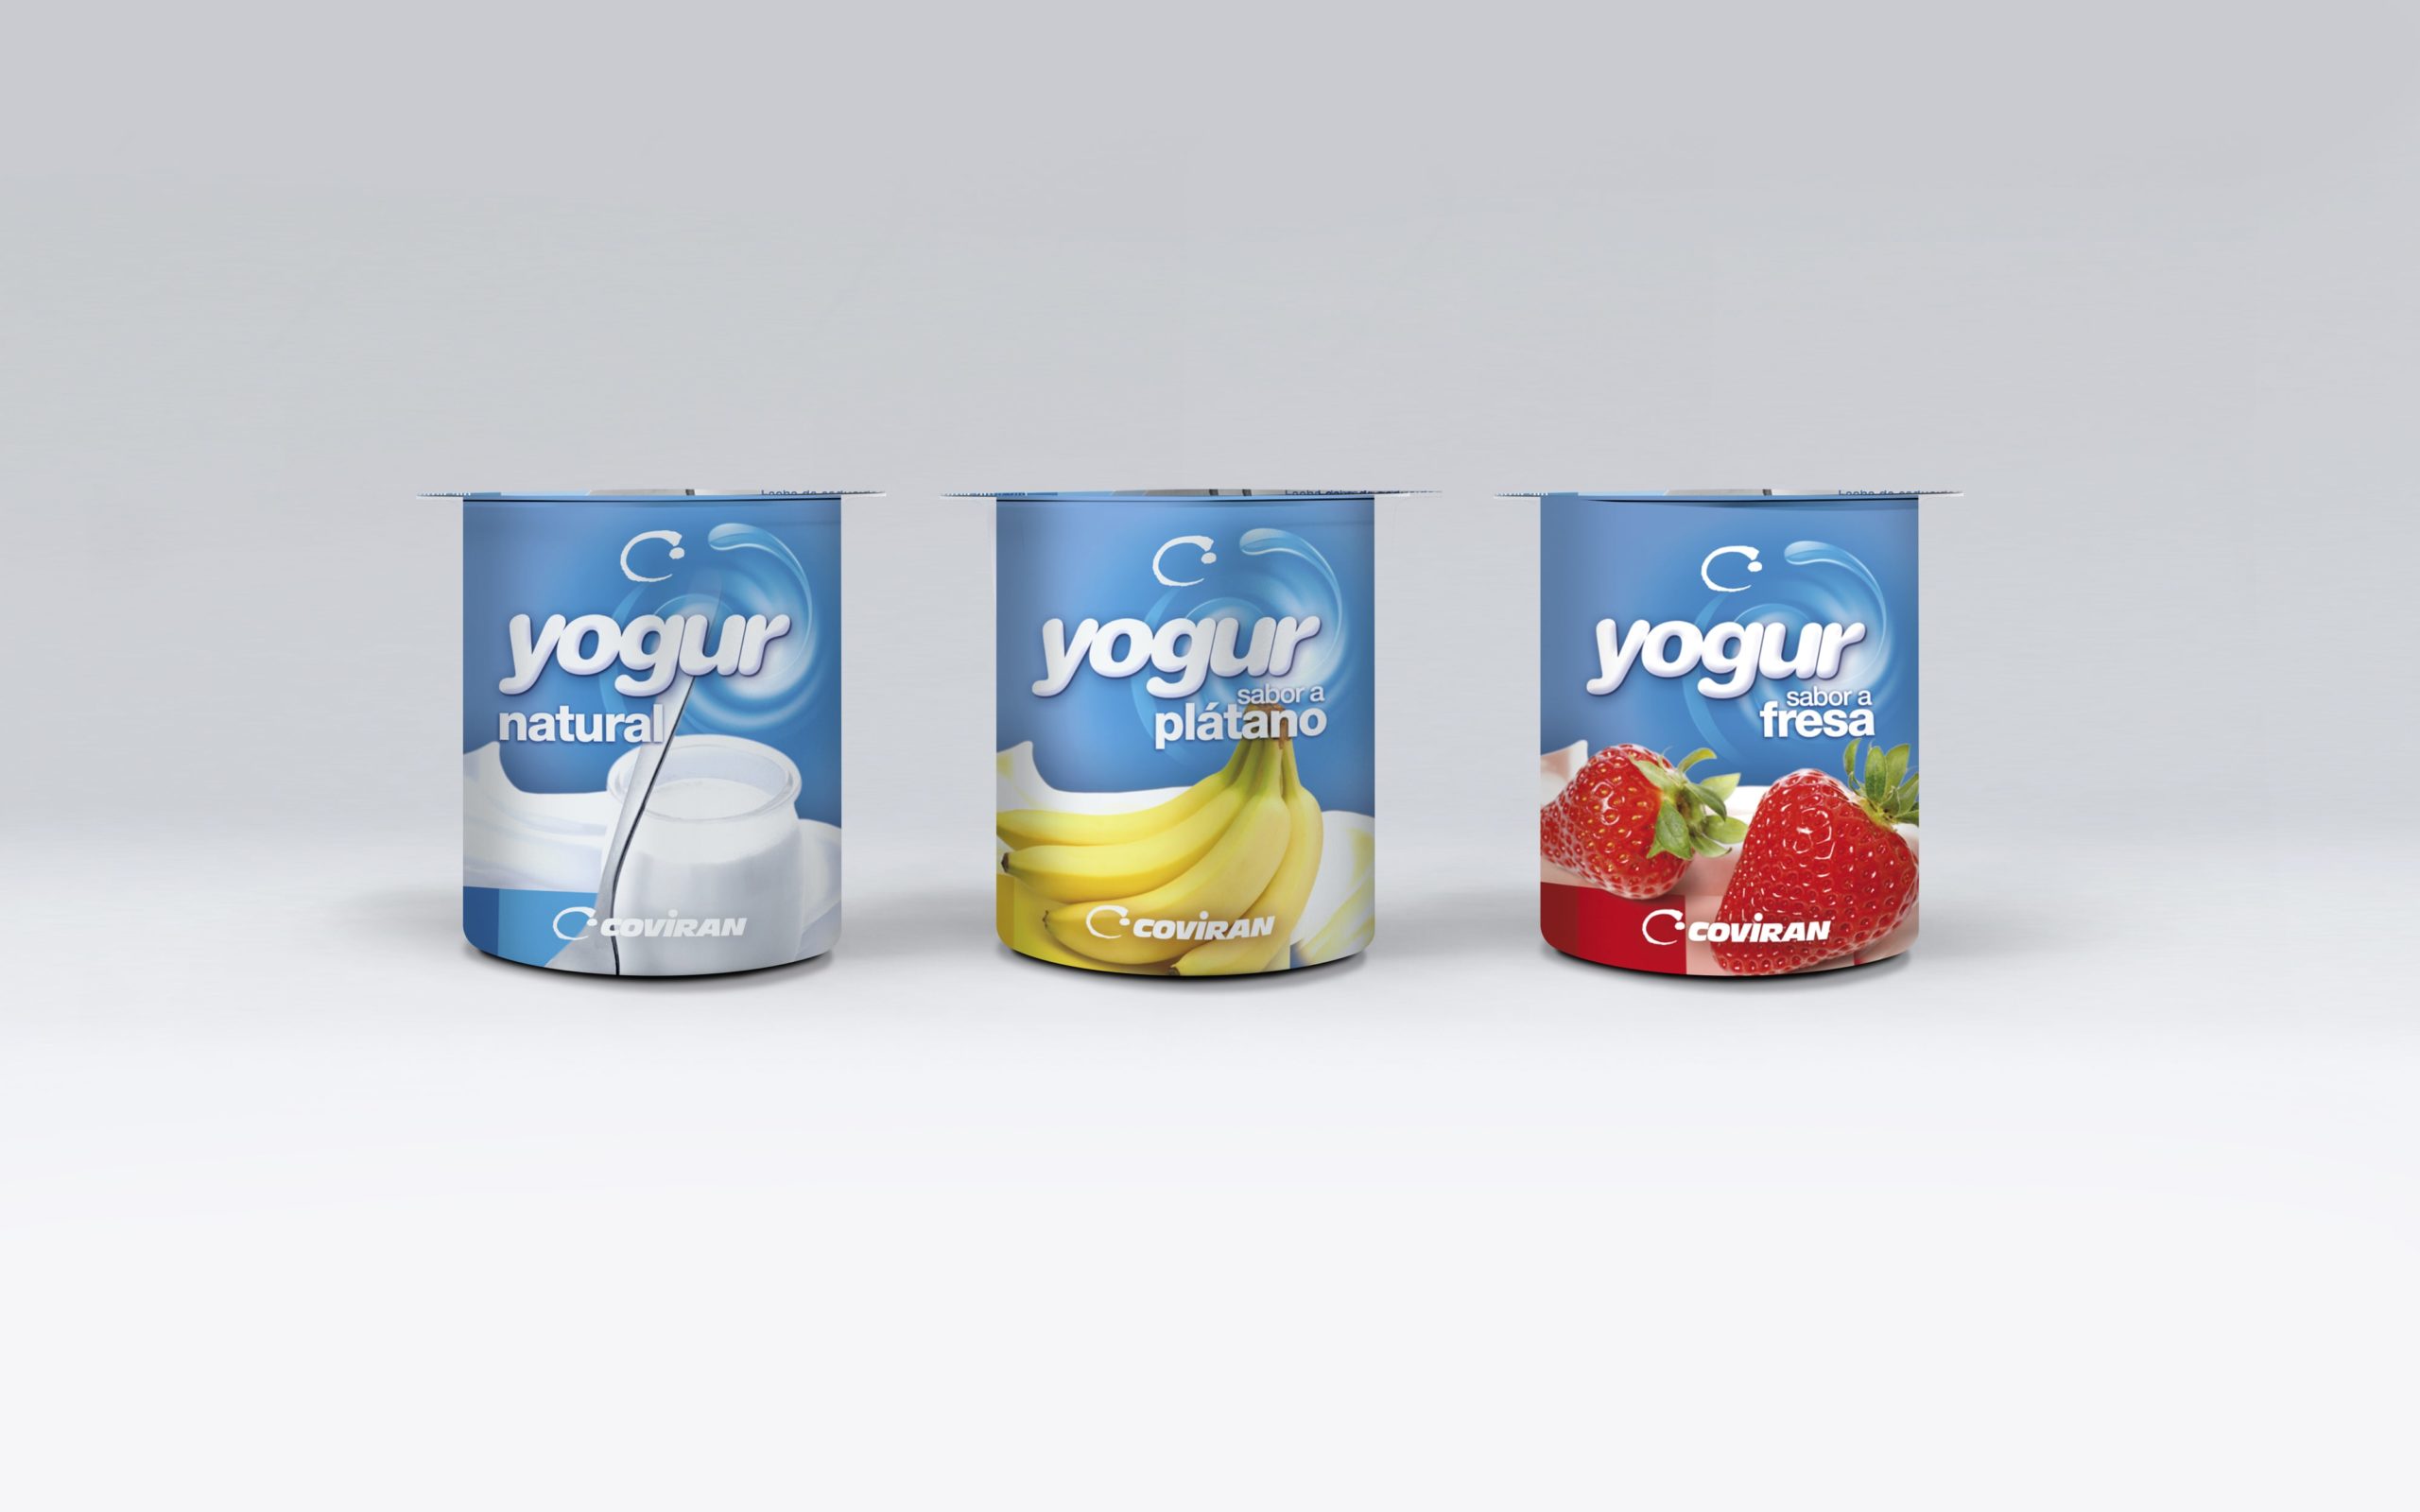 Gama de Yogures Coviran sabores, diseño packaging